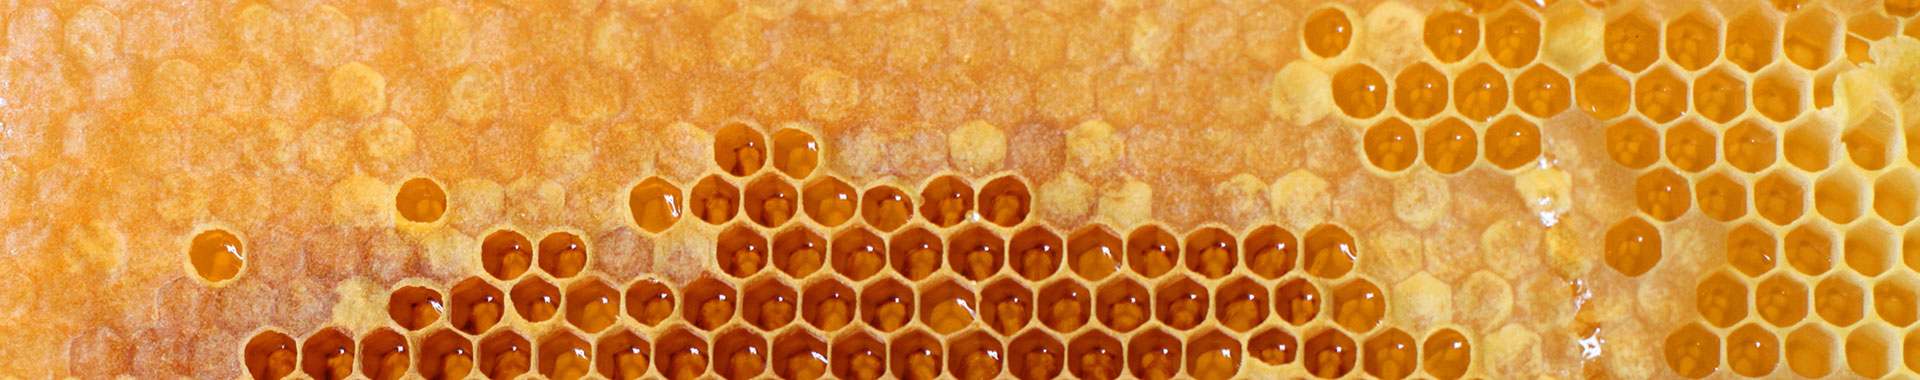 Heimischer Honig